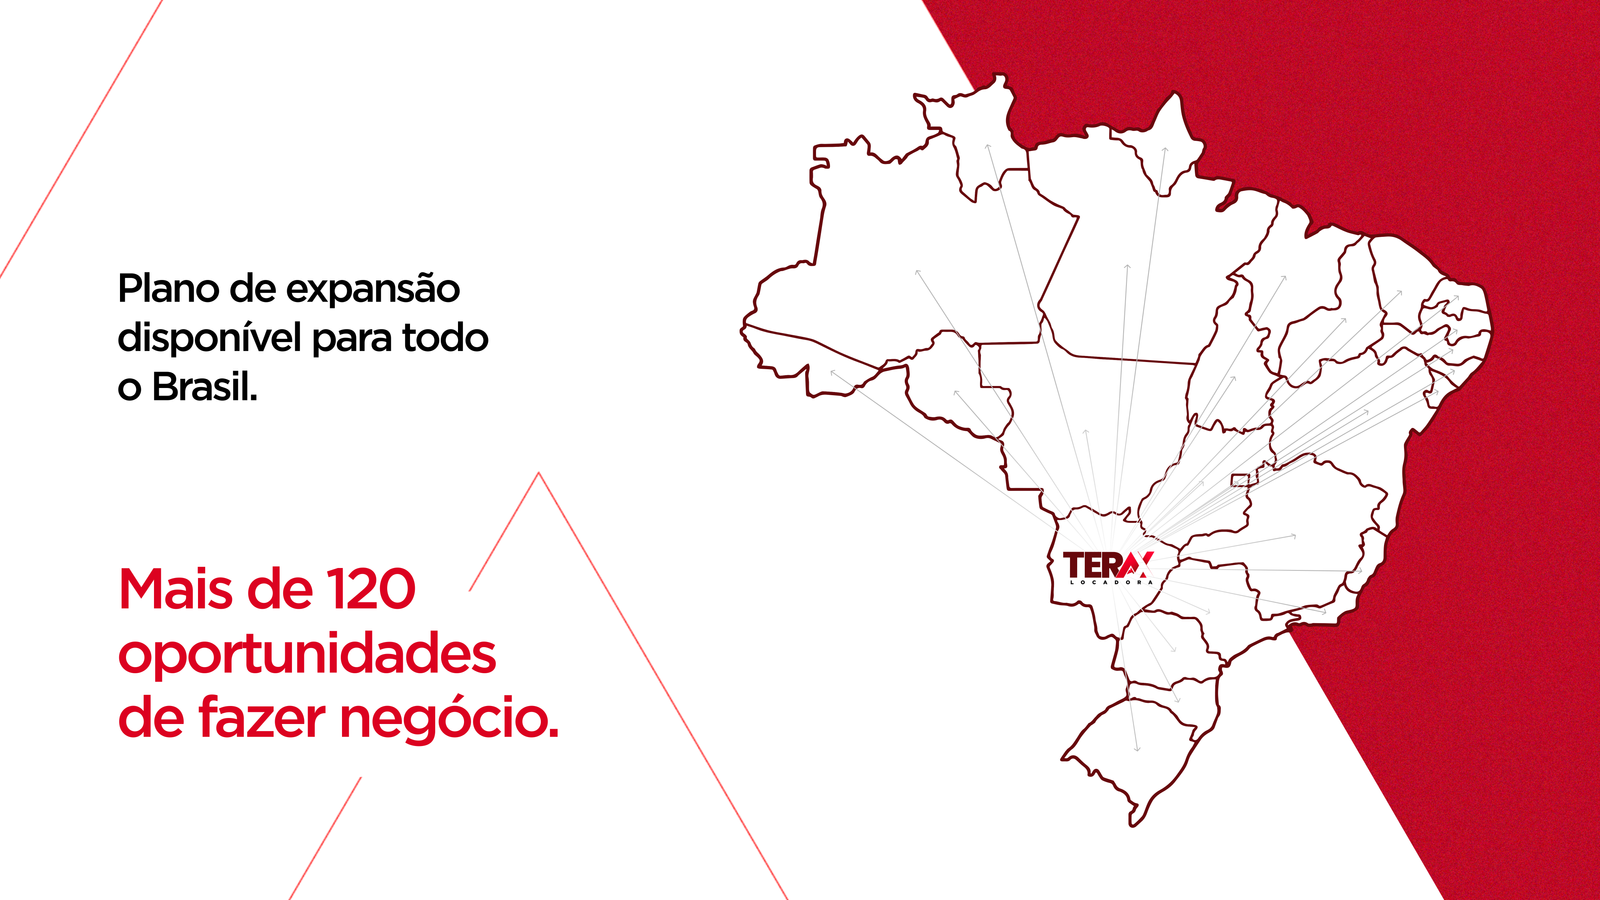 Plano de expansão disponível para todo o Brasil. Mais de 120 oportunidades de fazer negócio.